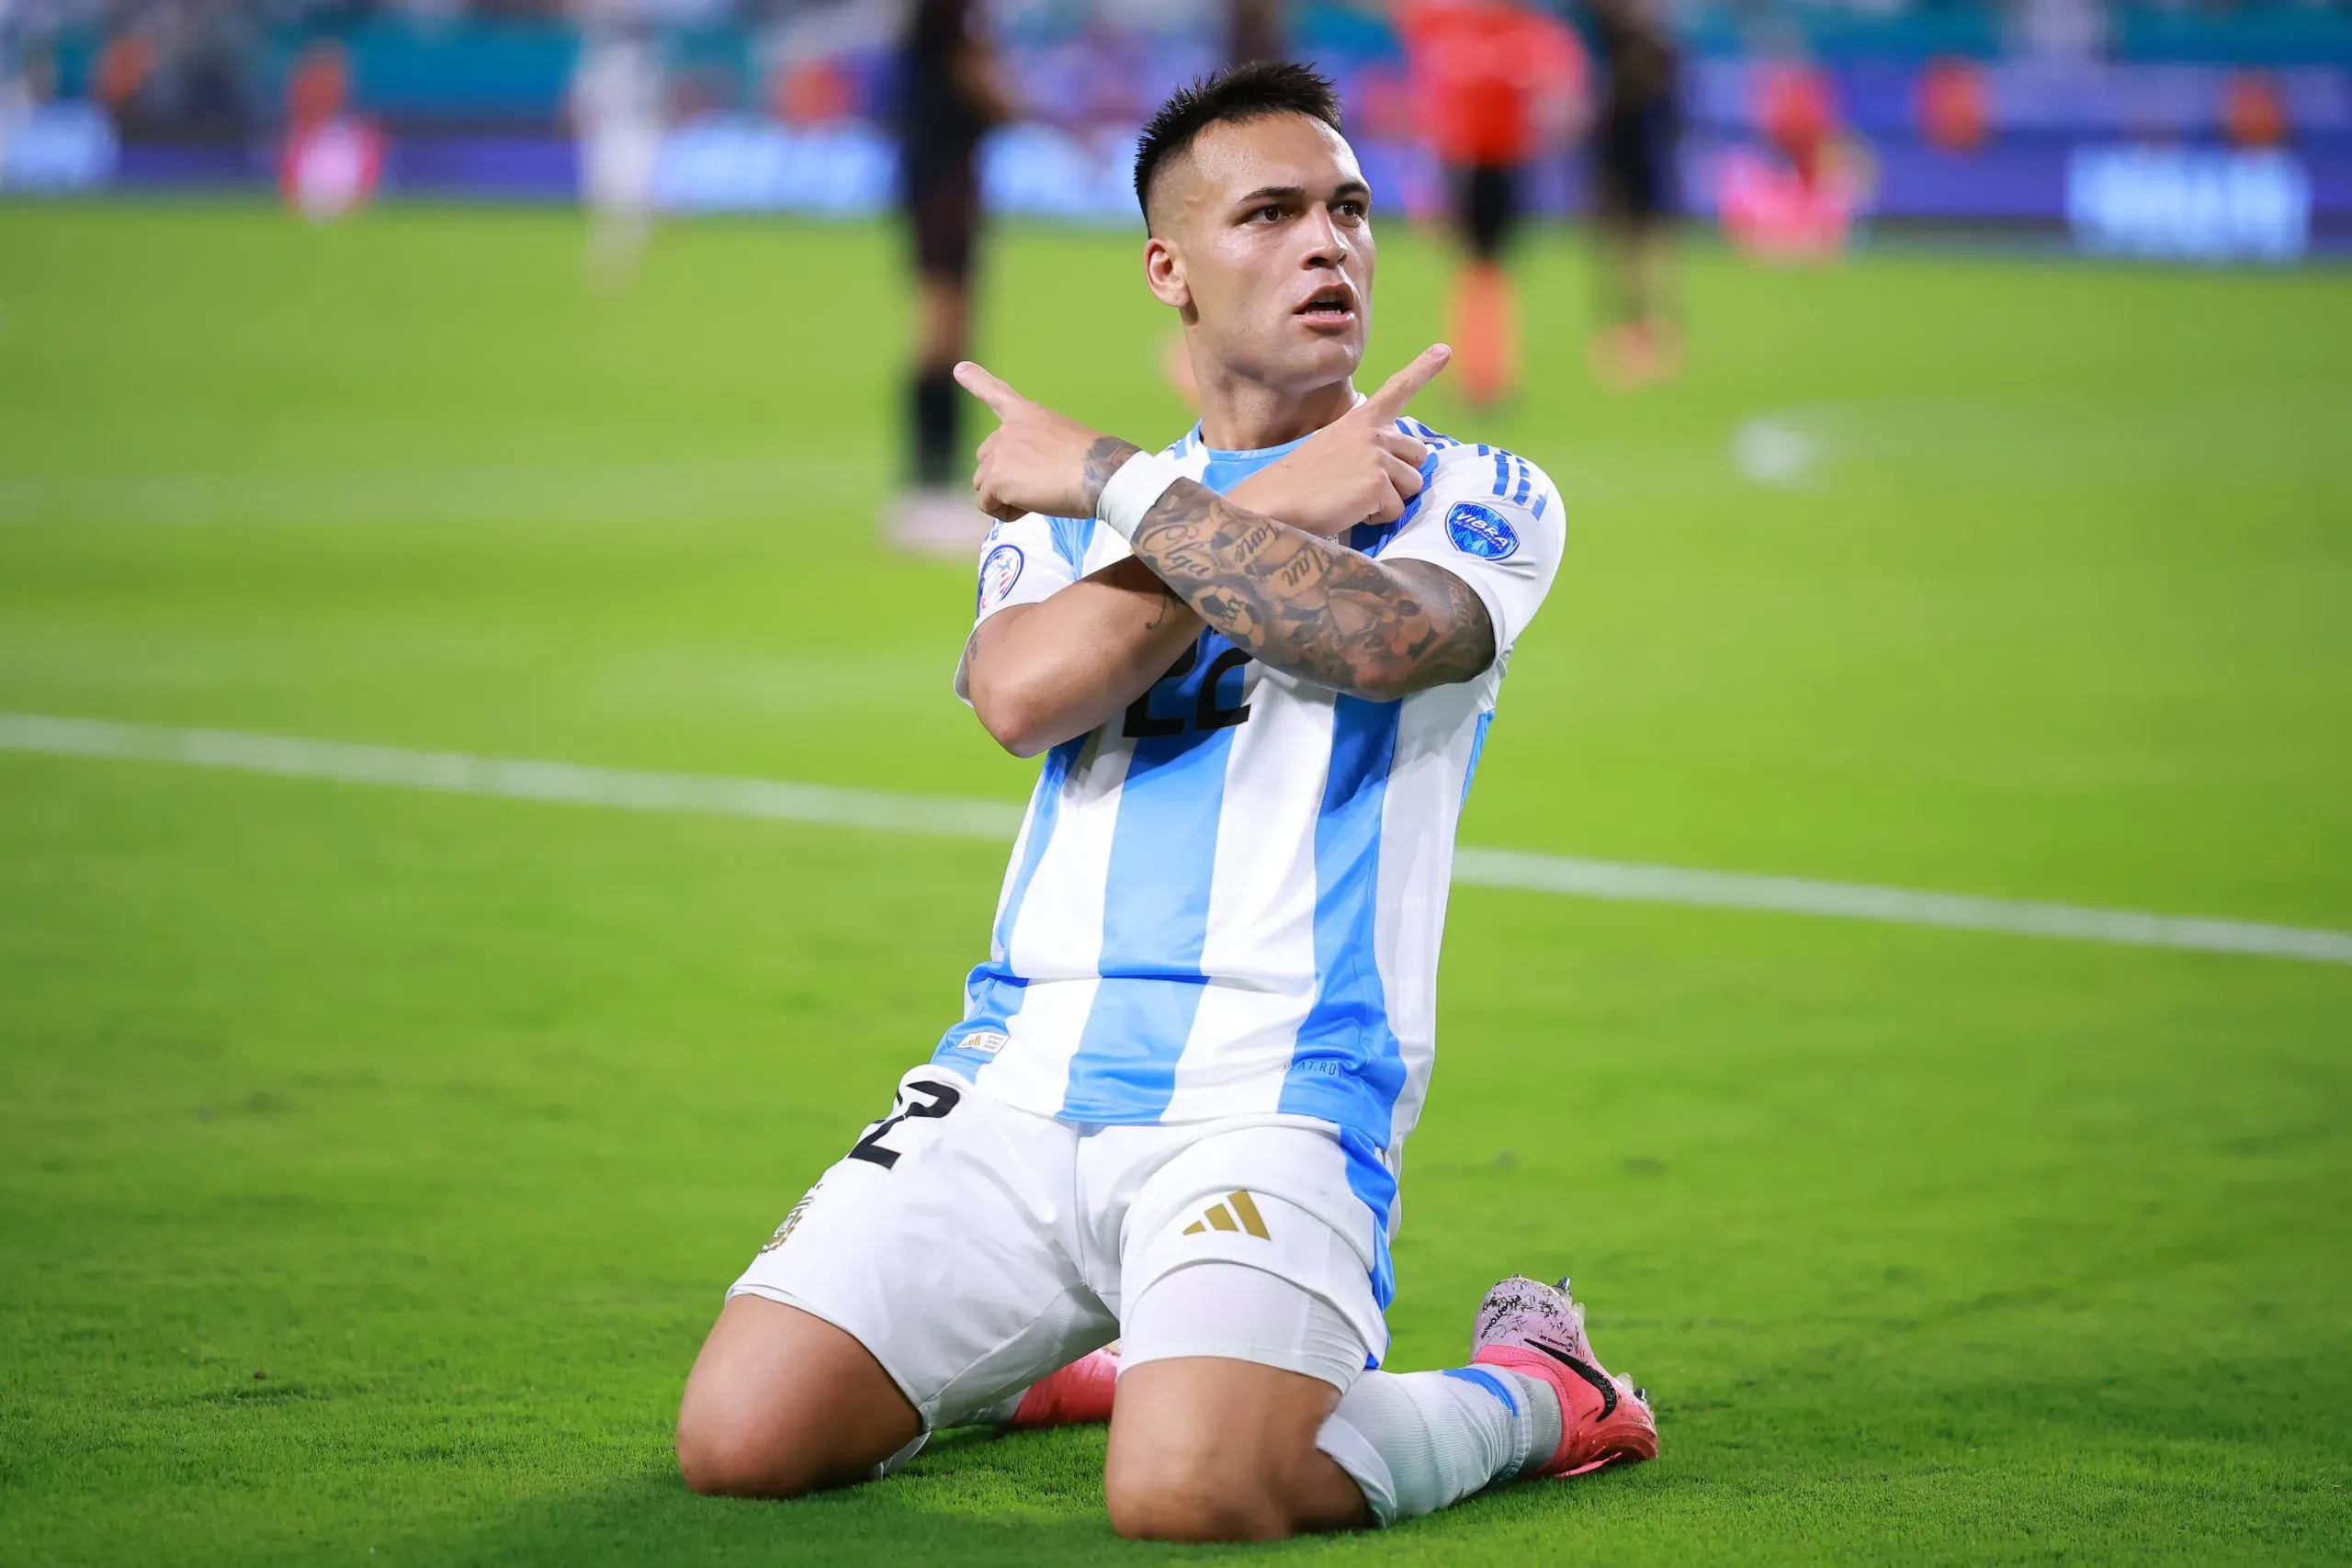 Lautaro Martínez comemorando gol. (Photo by Hector Vivas/Getty Images)